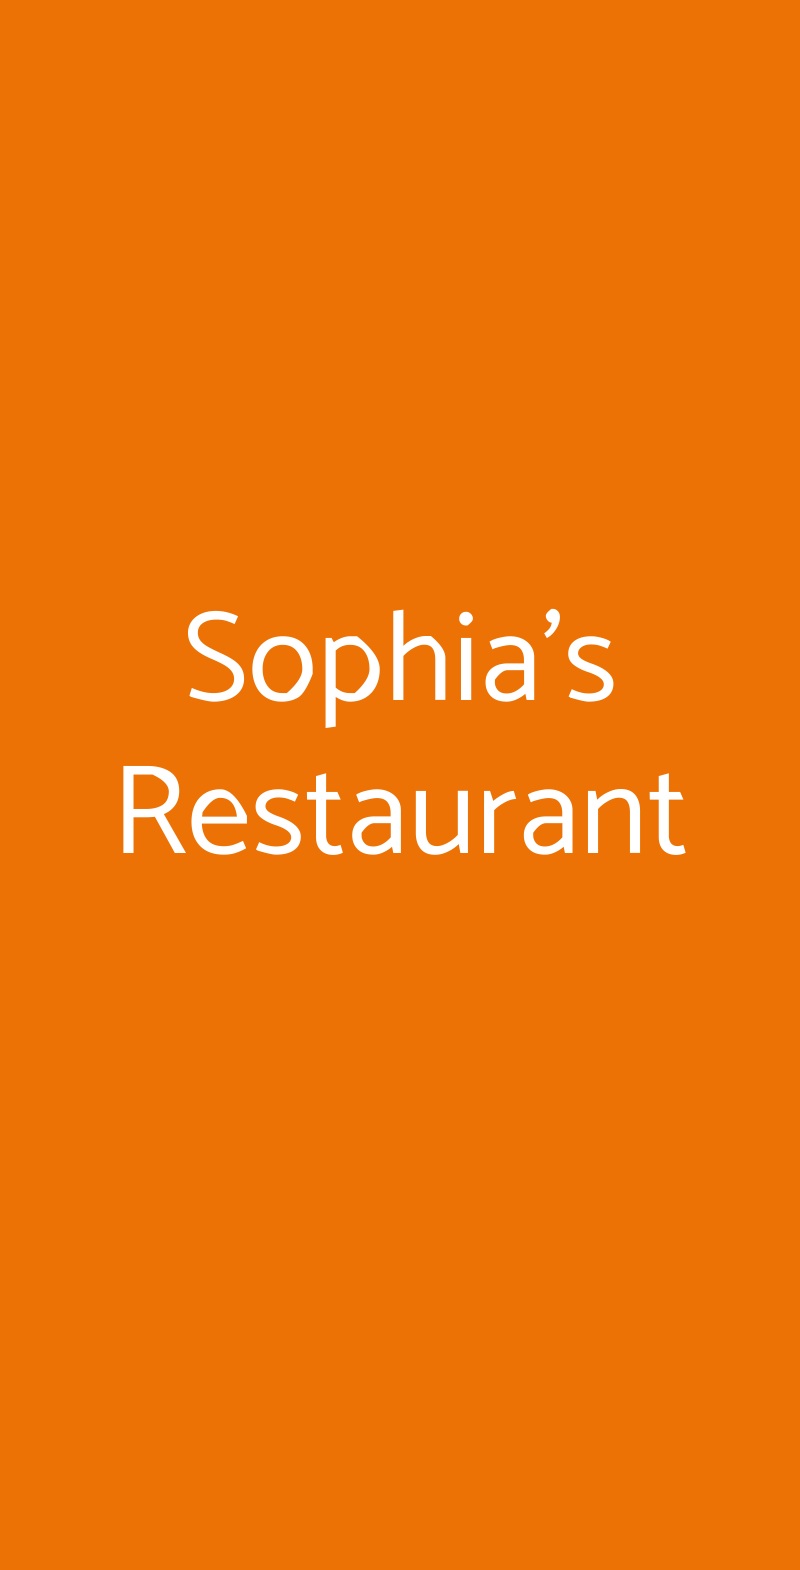 Sophia's Restaurant Milano menù 1 pagina